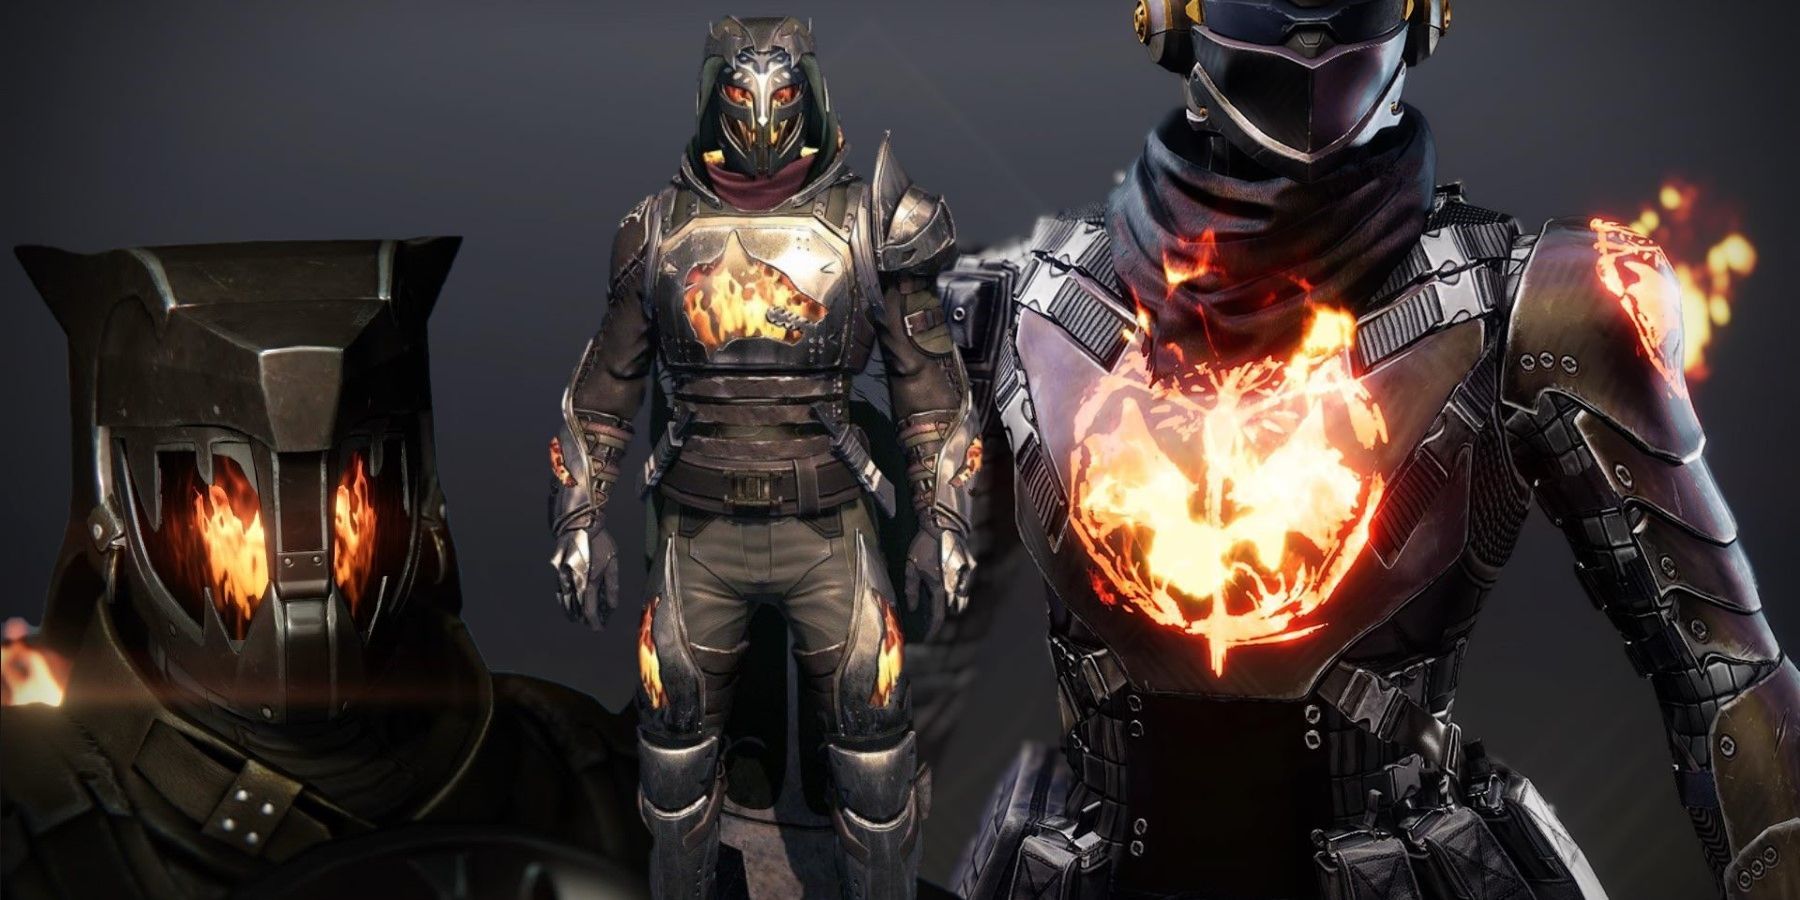 armor glows dim destiny 2